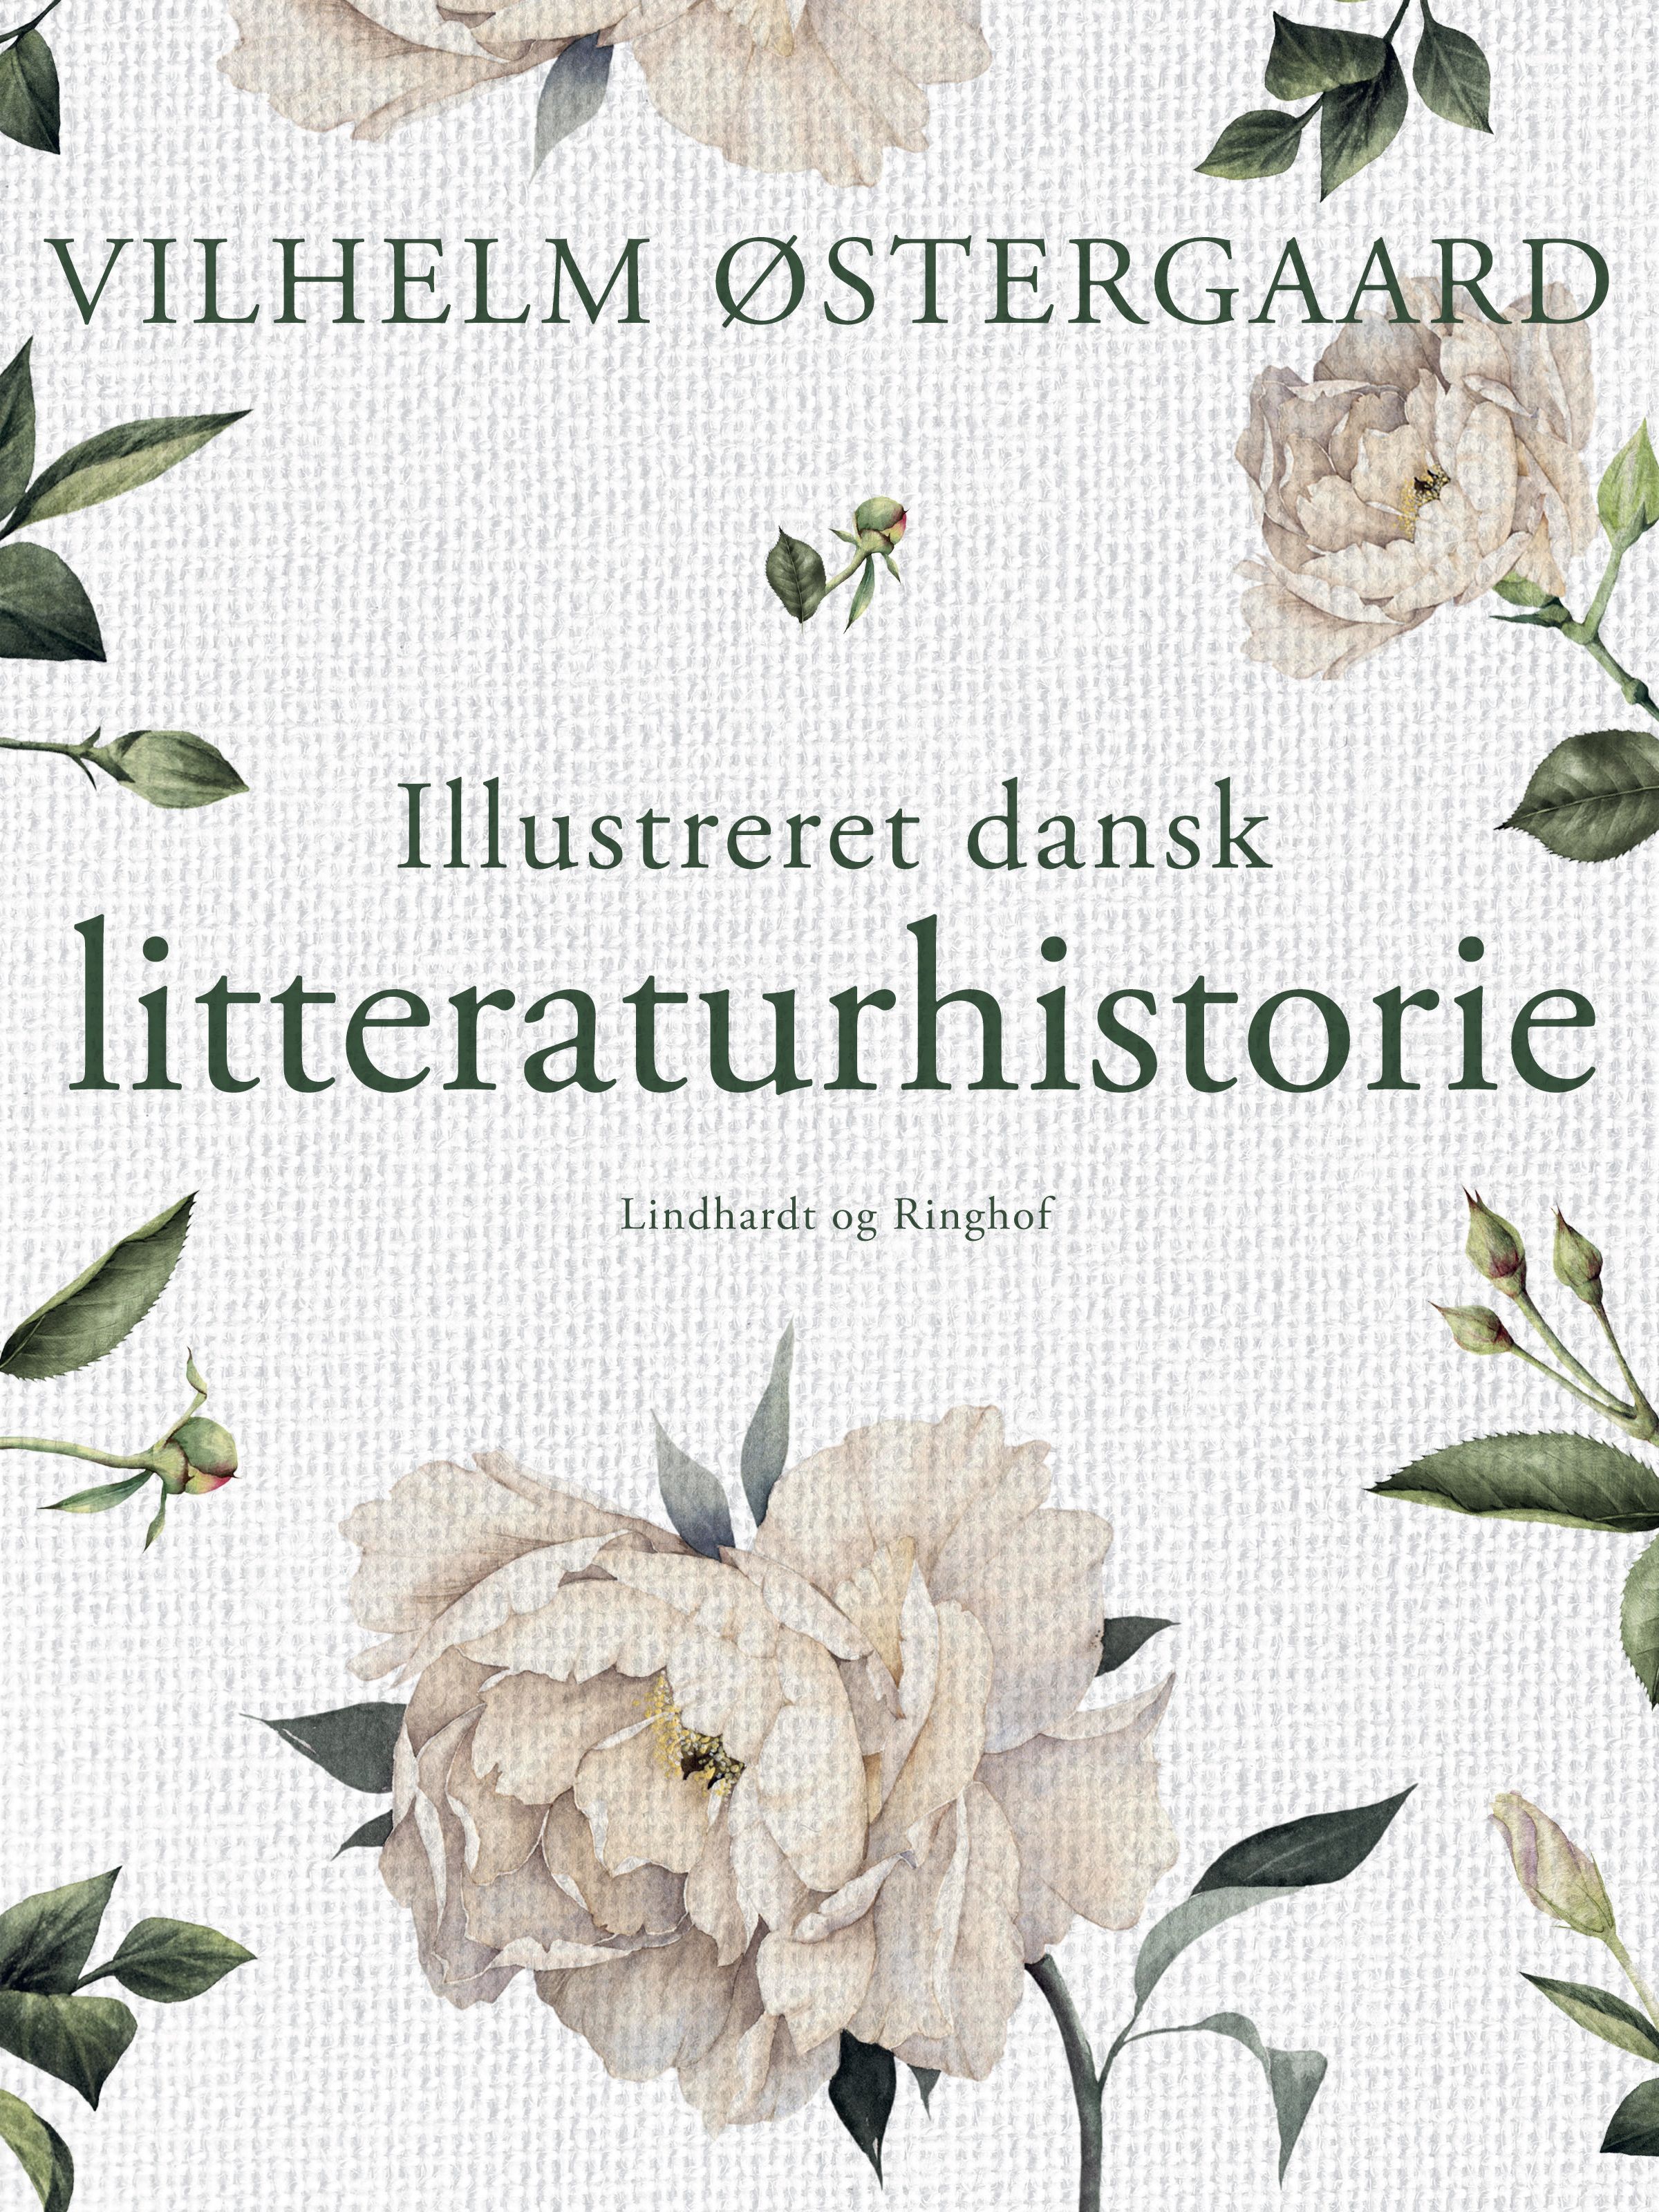 Illustreret dansk litteraturhistorie, e-bog af Vilhelm Østergaard